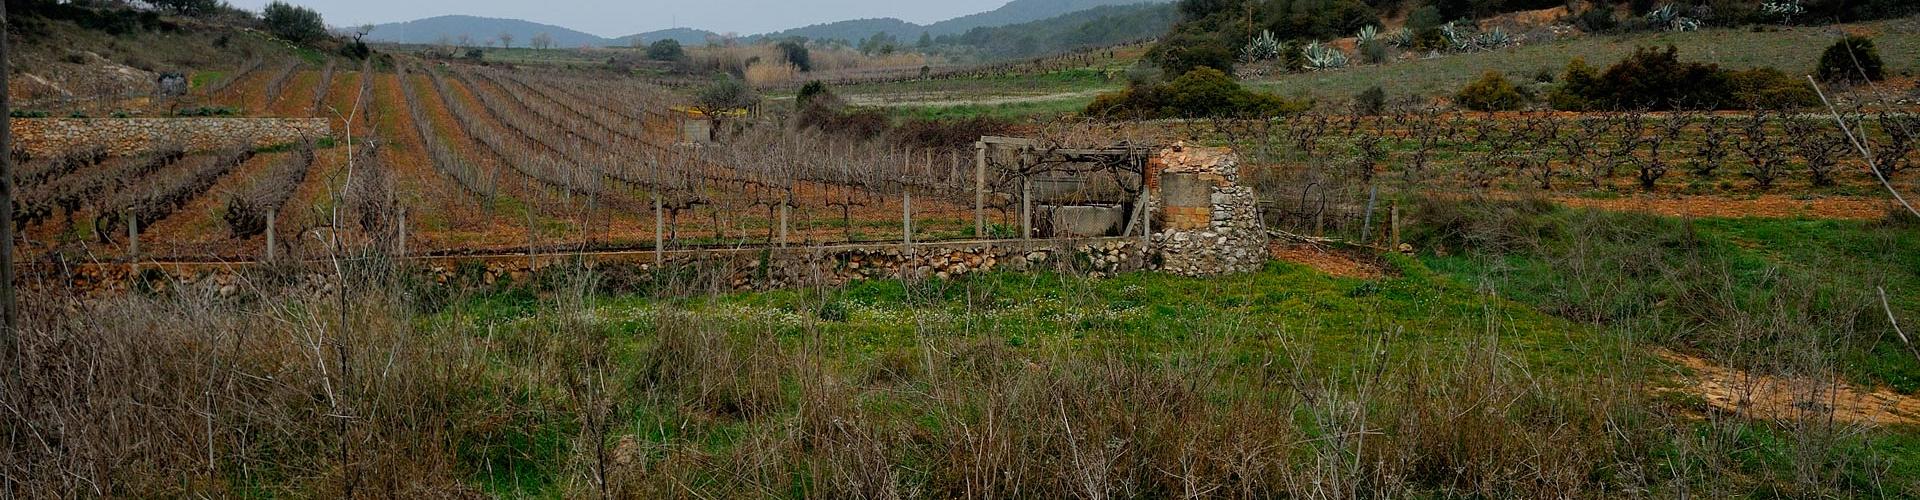 Sector de vinyes a les Pereres